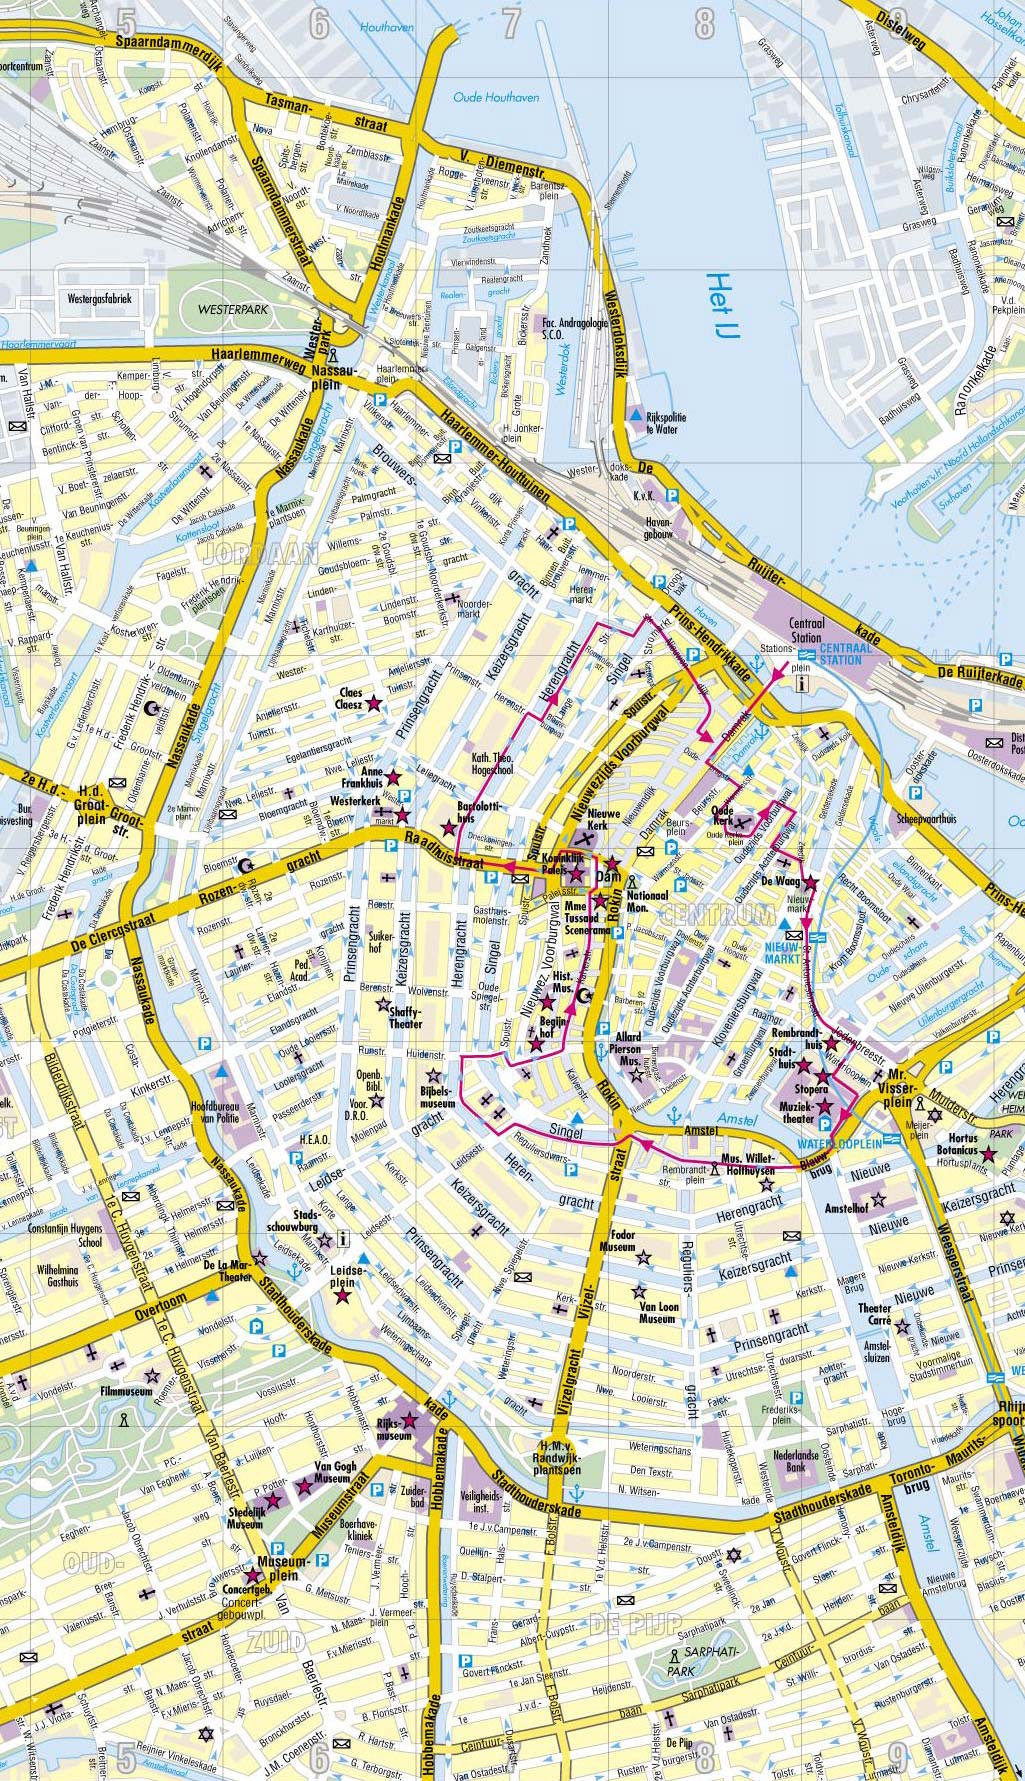 Mappa di Amsterdam